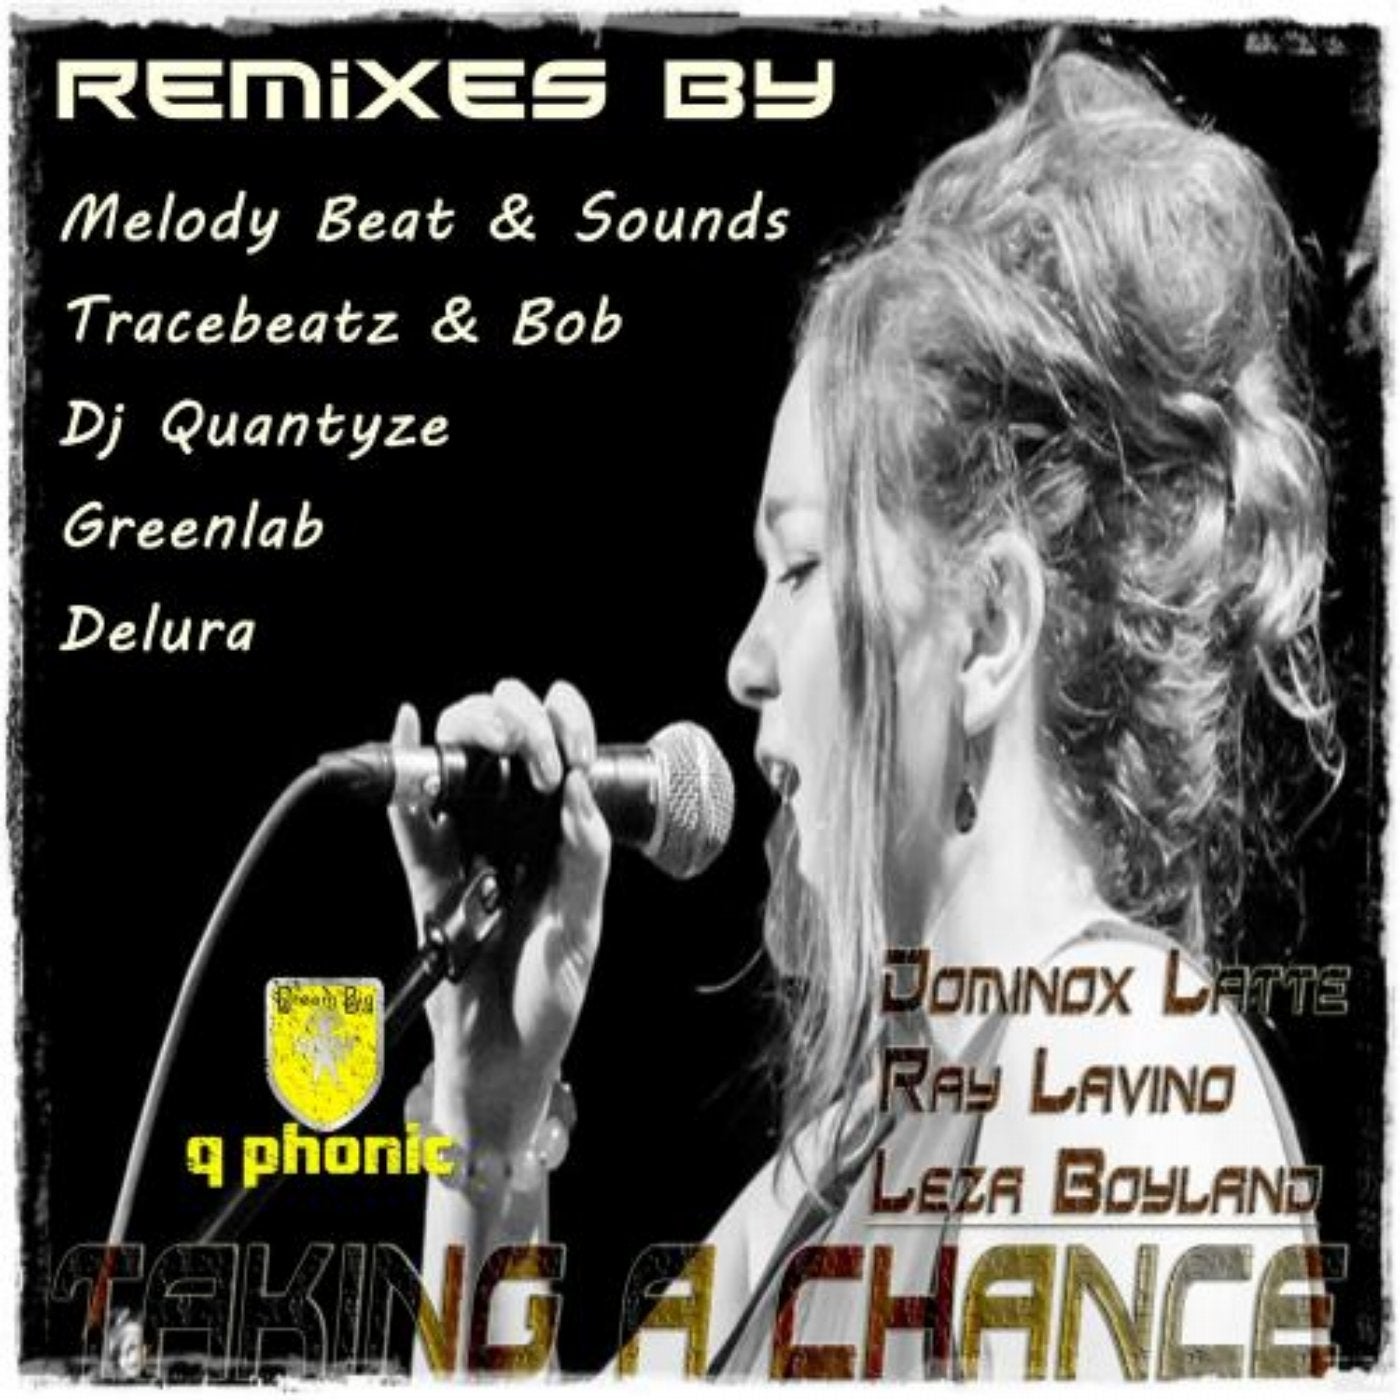 Taking A Chance Remixes